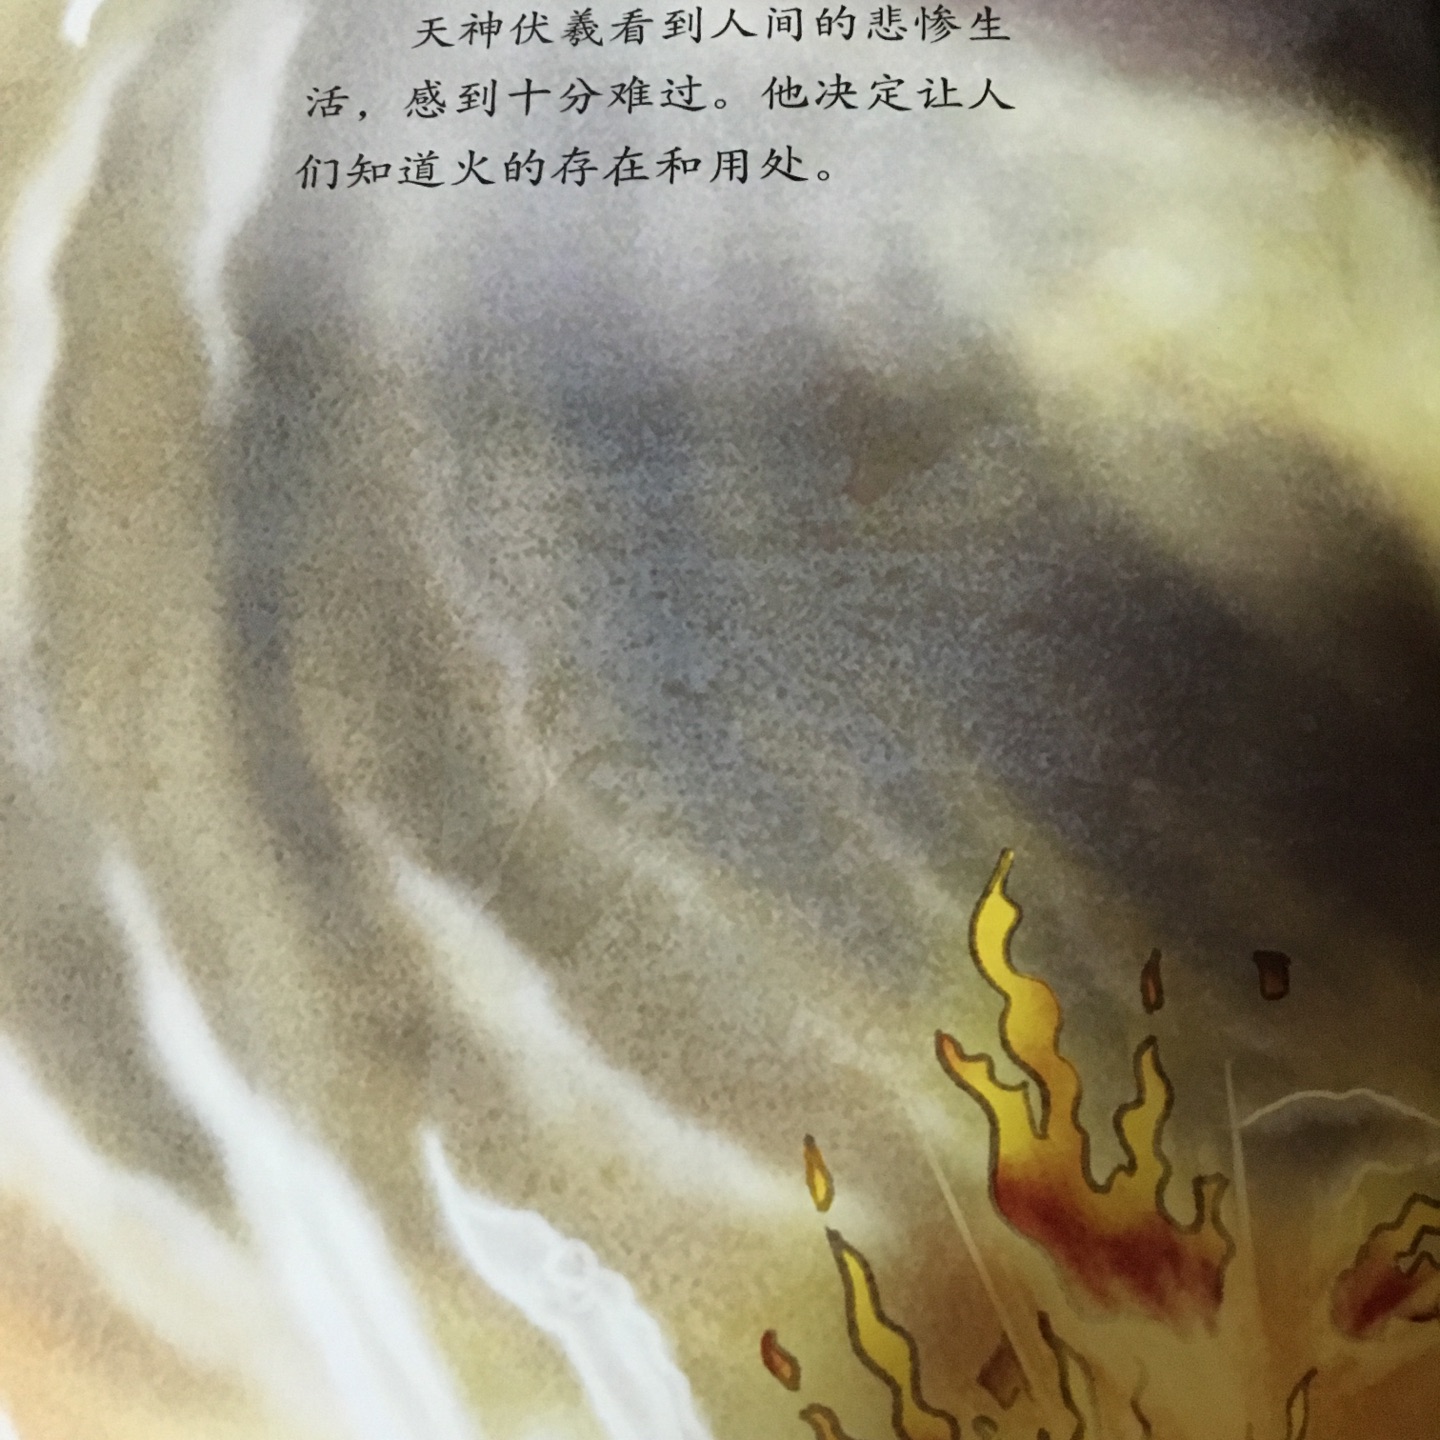 中国古典神话故事本本经典，孩子拿到书就说都要买，书的内容表达简洁，图画色彩鲜艳，孩子激发孩子的阅读兴趣。绘本阅读用孩子最适合的方式了解神话故事，现在的孩子真幸福！